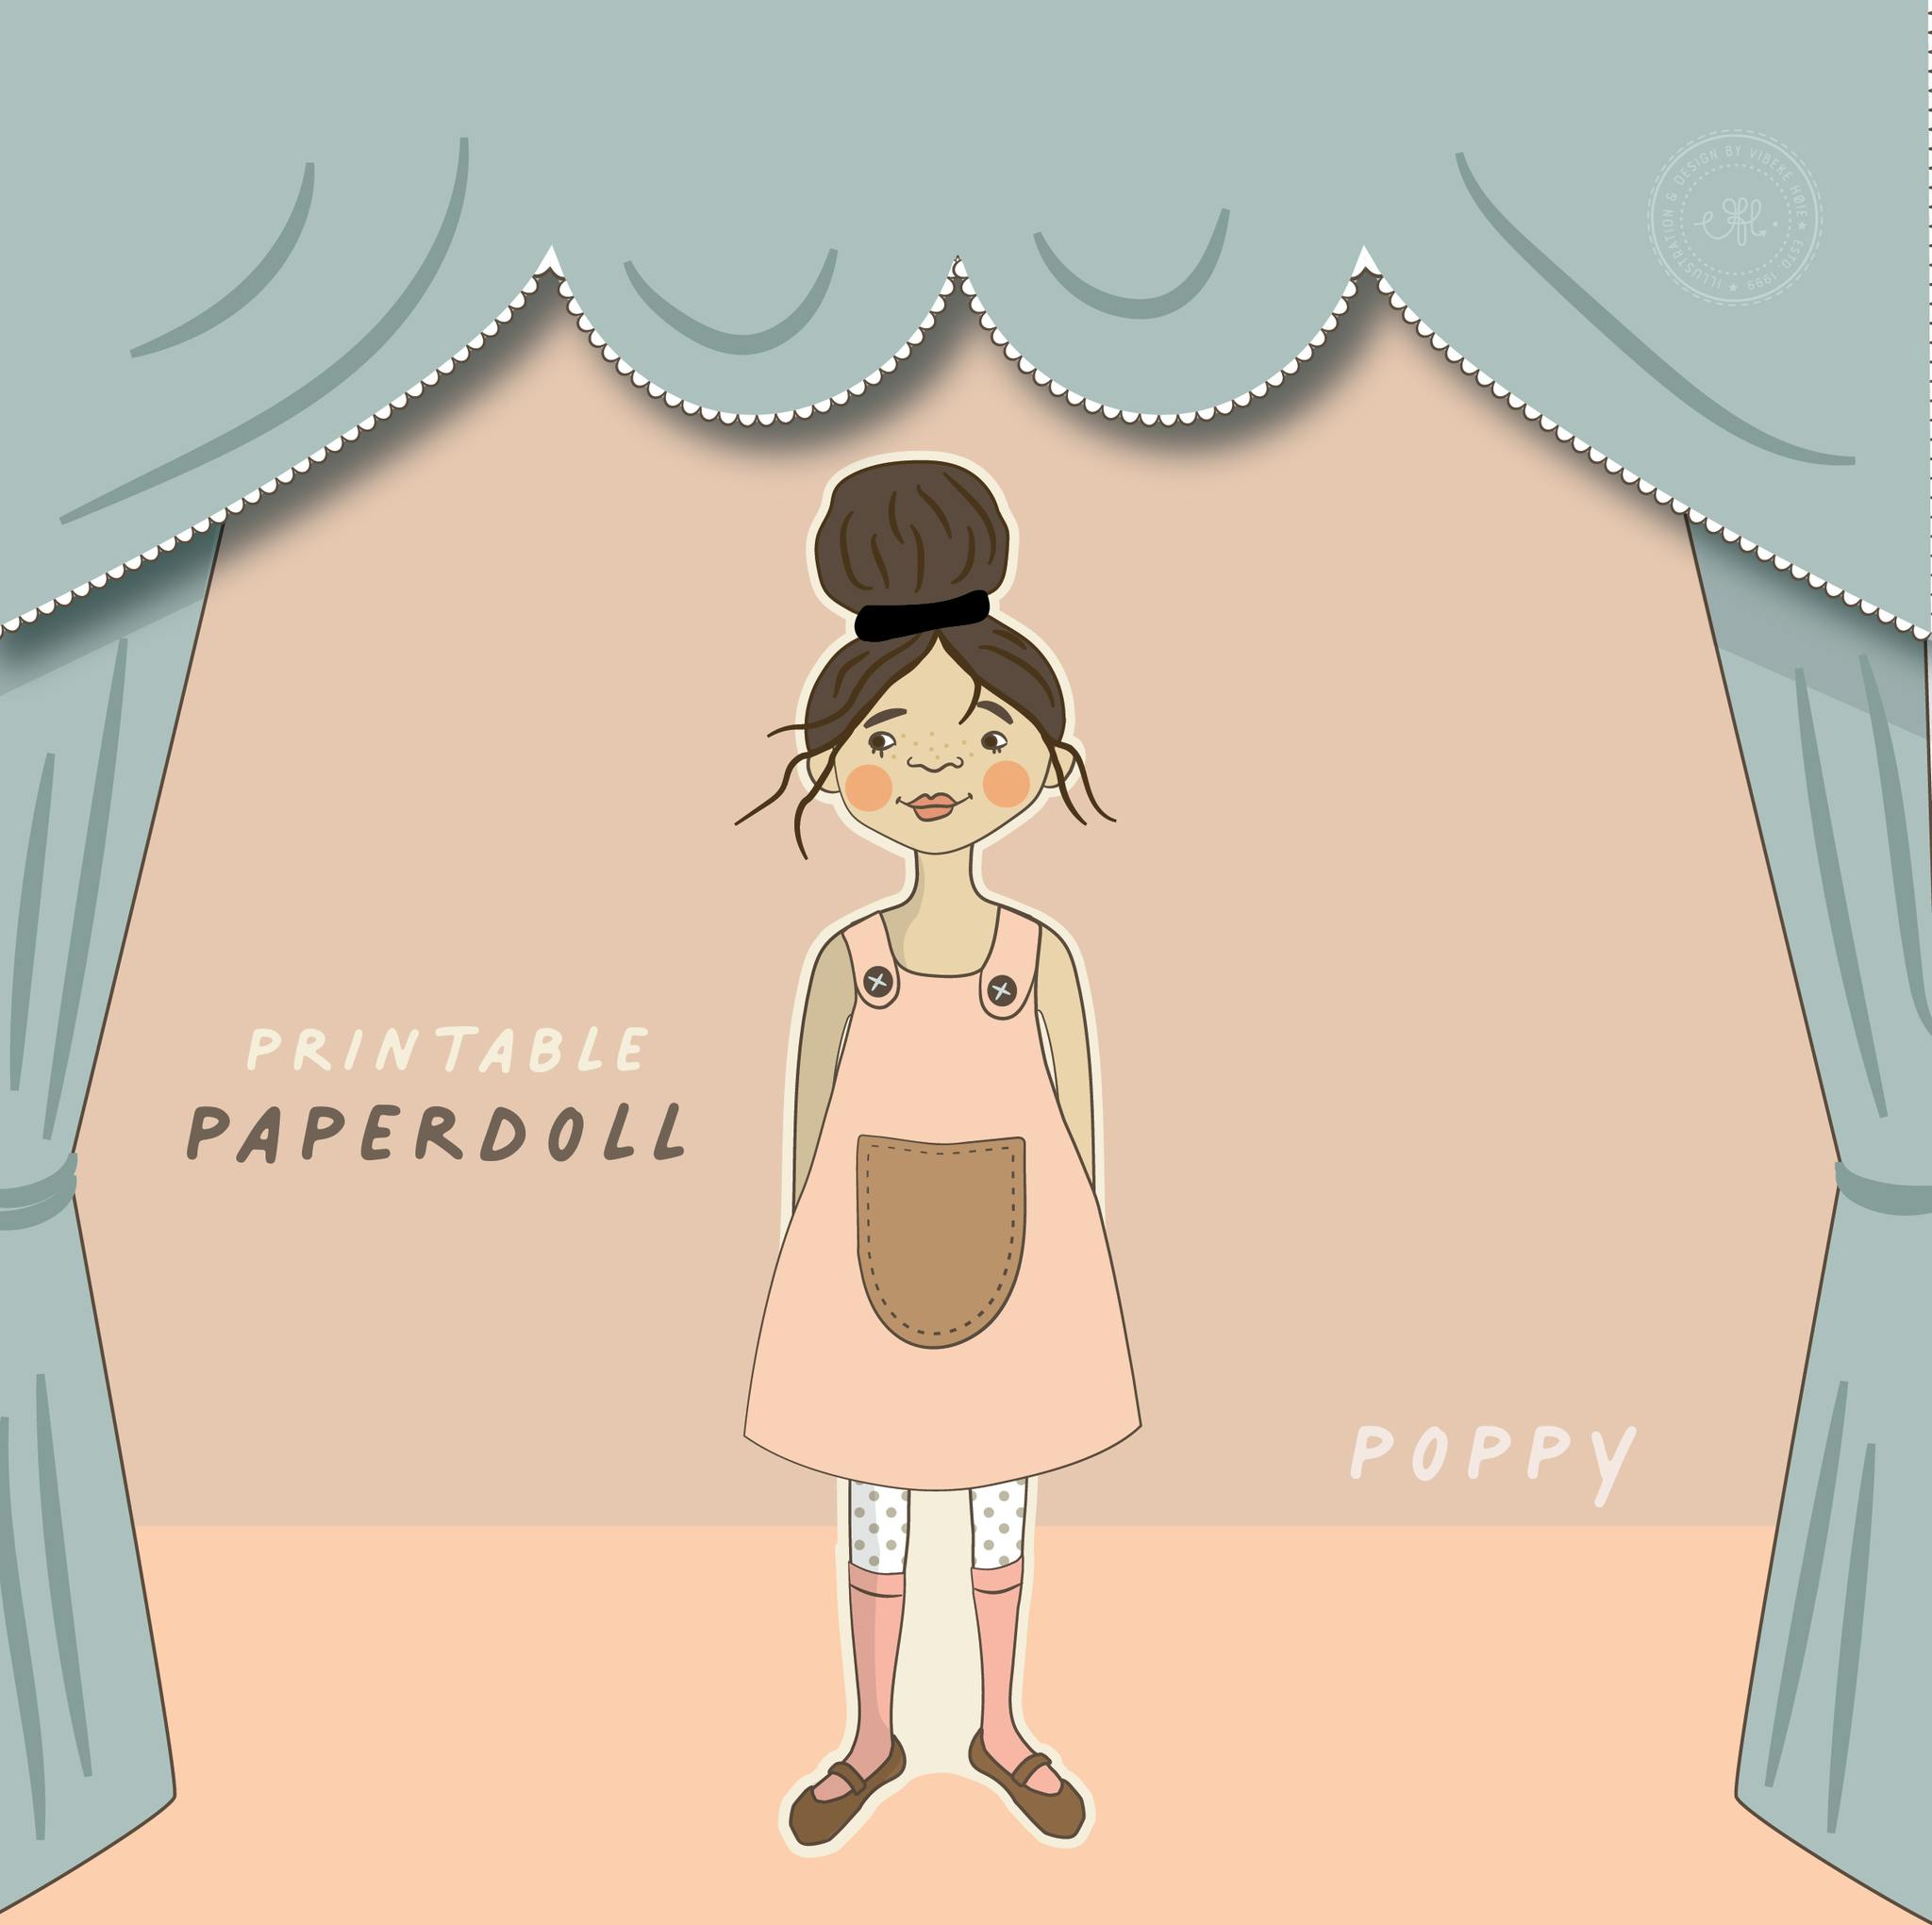 The Paperdoll - Poppy